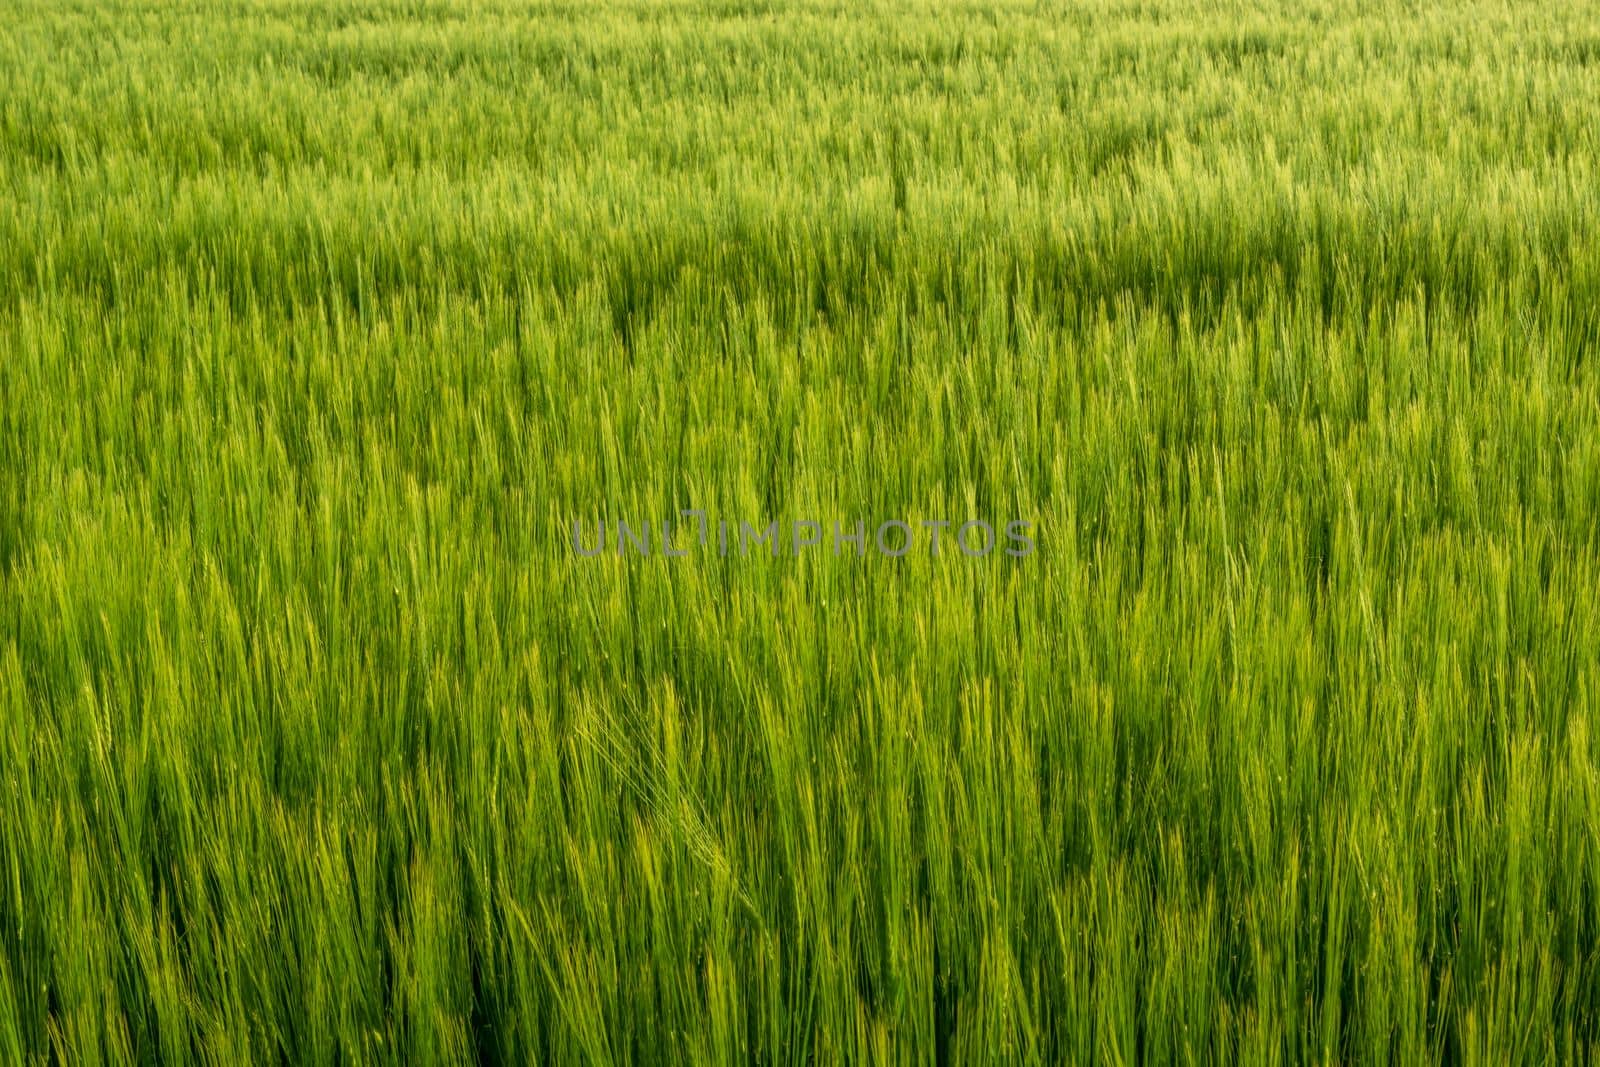 Many green ears of barley grain in the field